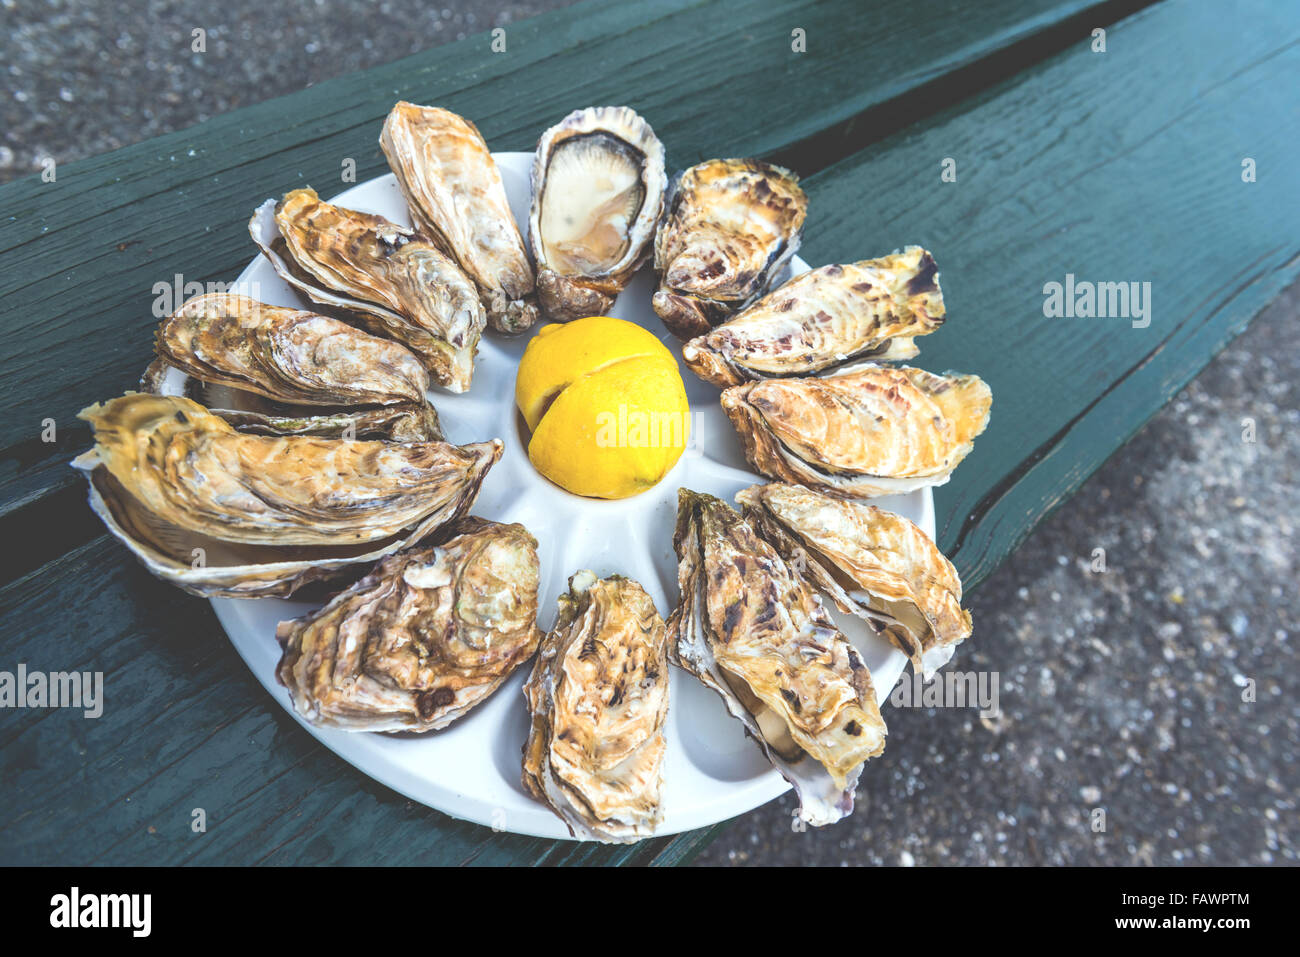 Ein Dutzend Austern und eine Zitrone auf eine Kunststoffplatte, Essen im Freien in der Nähe des Meeres Stockfoto